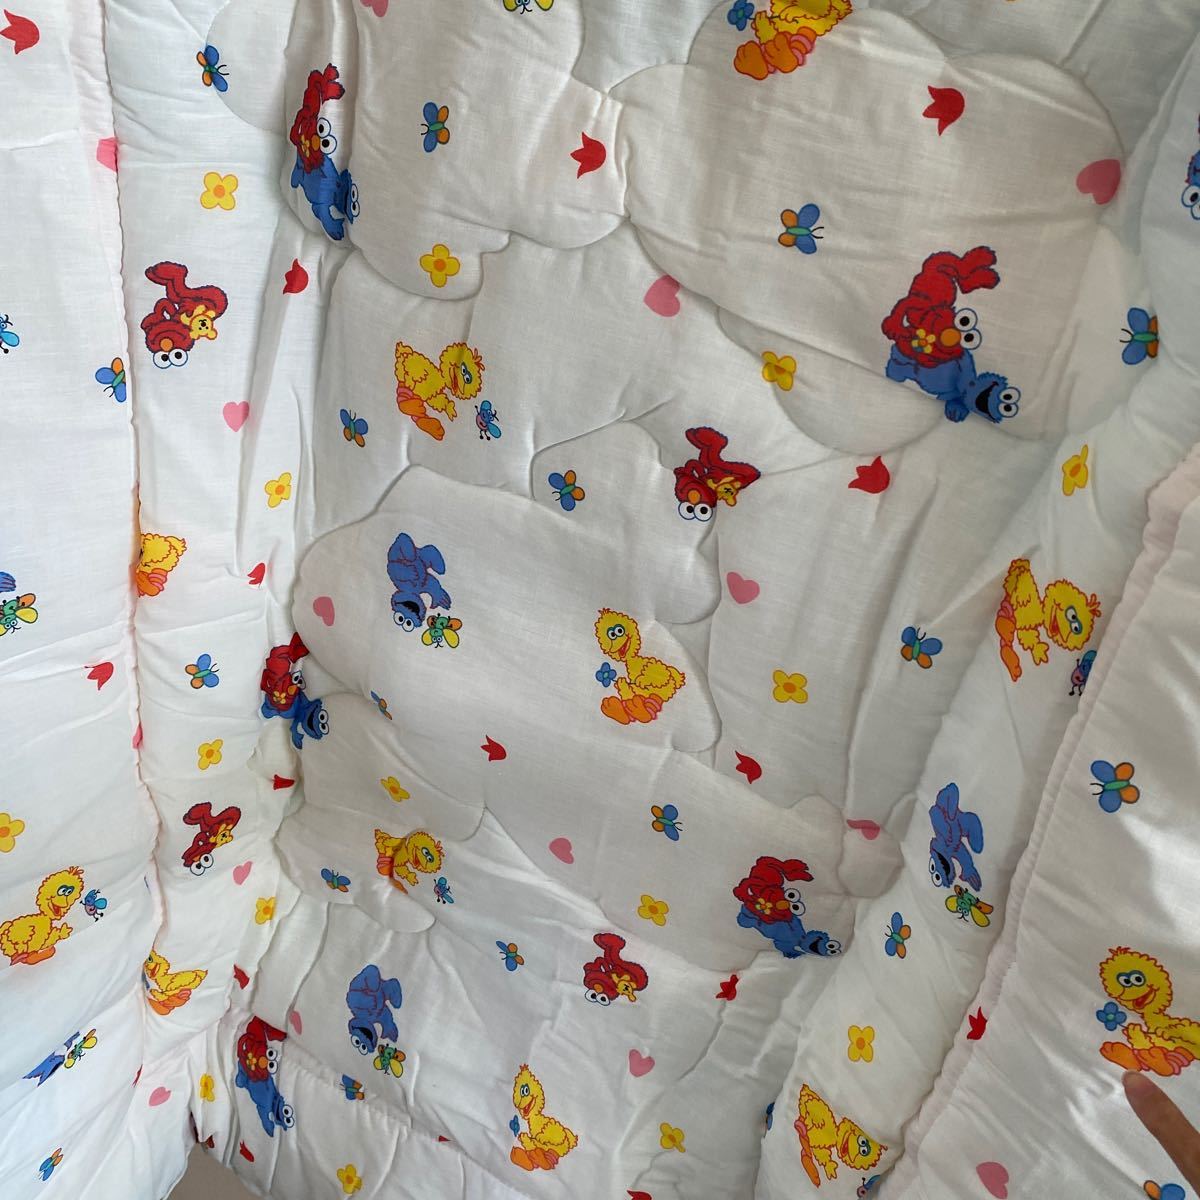  редкость не использовался неиспользуемый товар Улица Сезам ватное одеяло baby Kids Vintage 90 годы America производства USA Vintage 1990s Ame Cara 